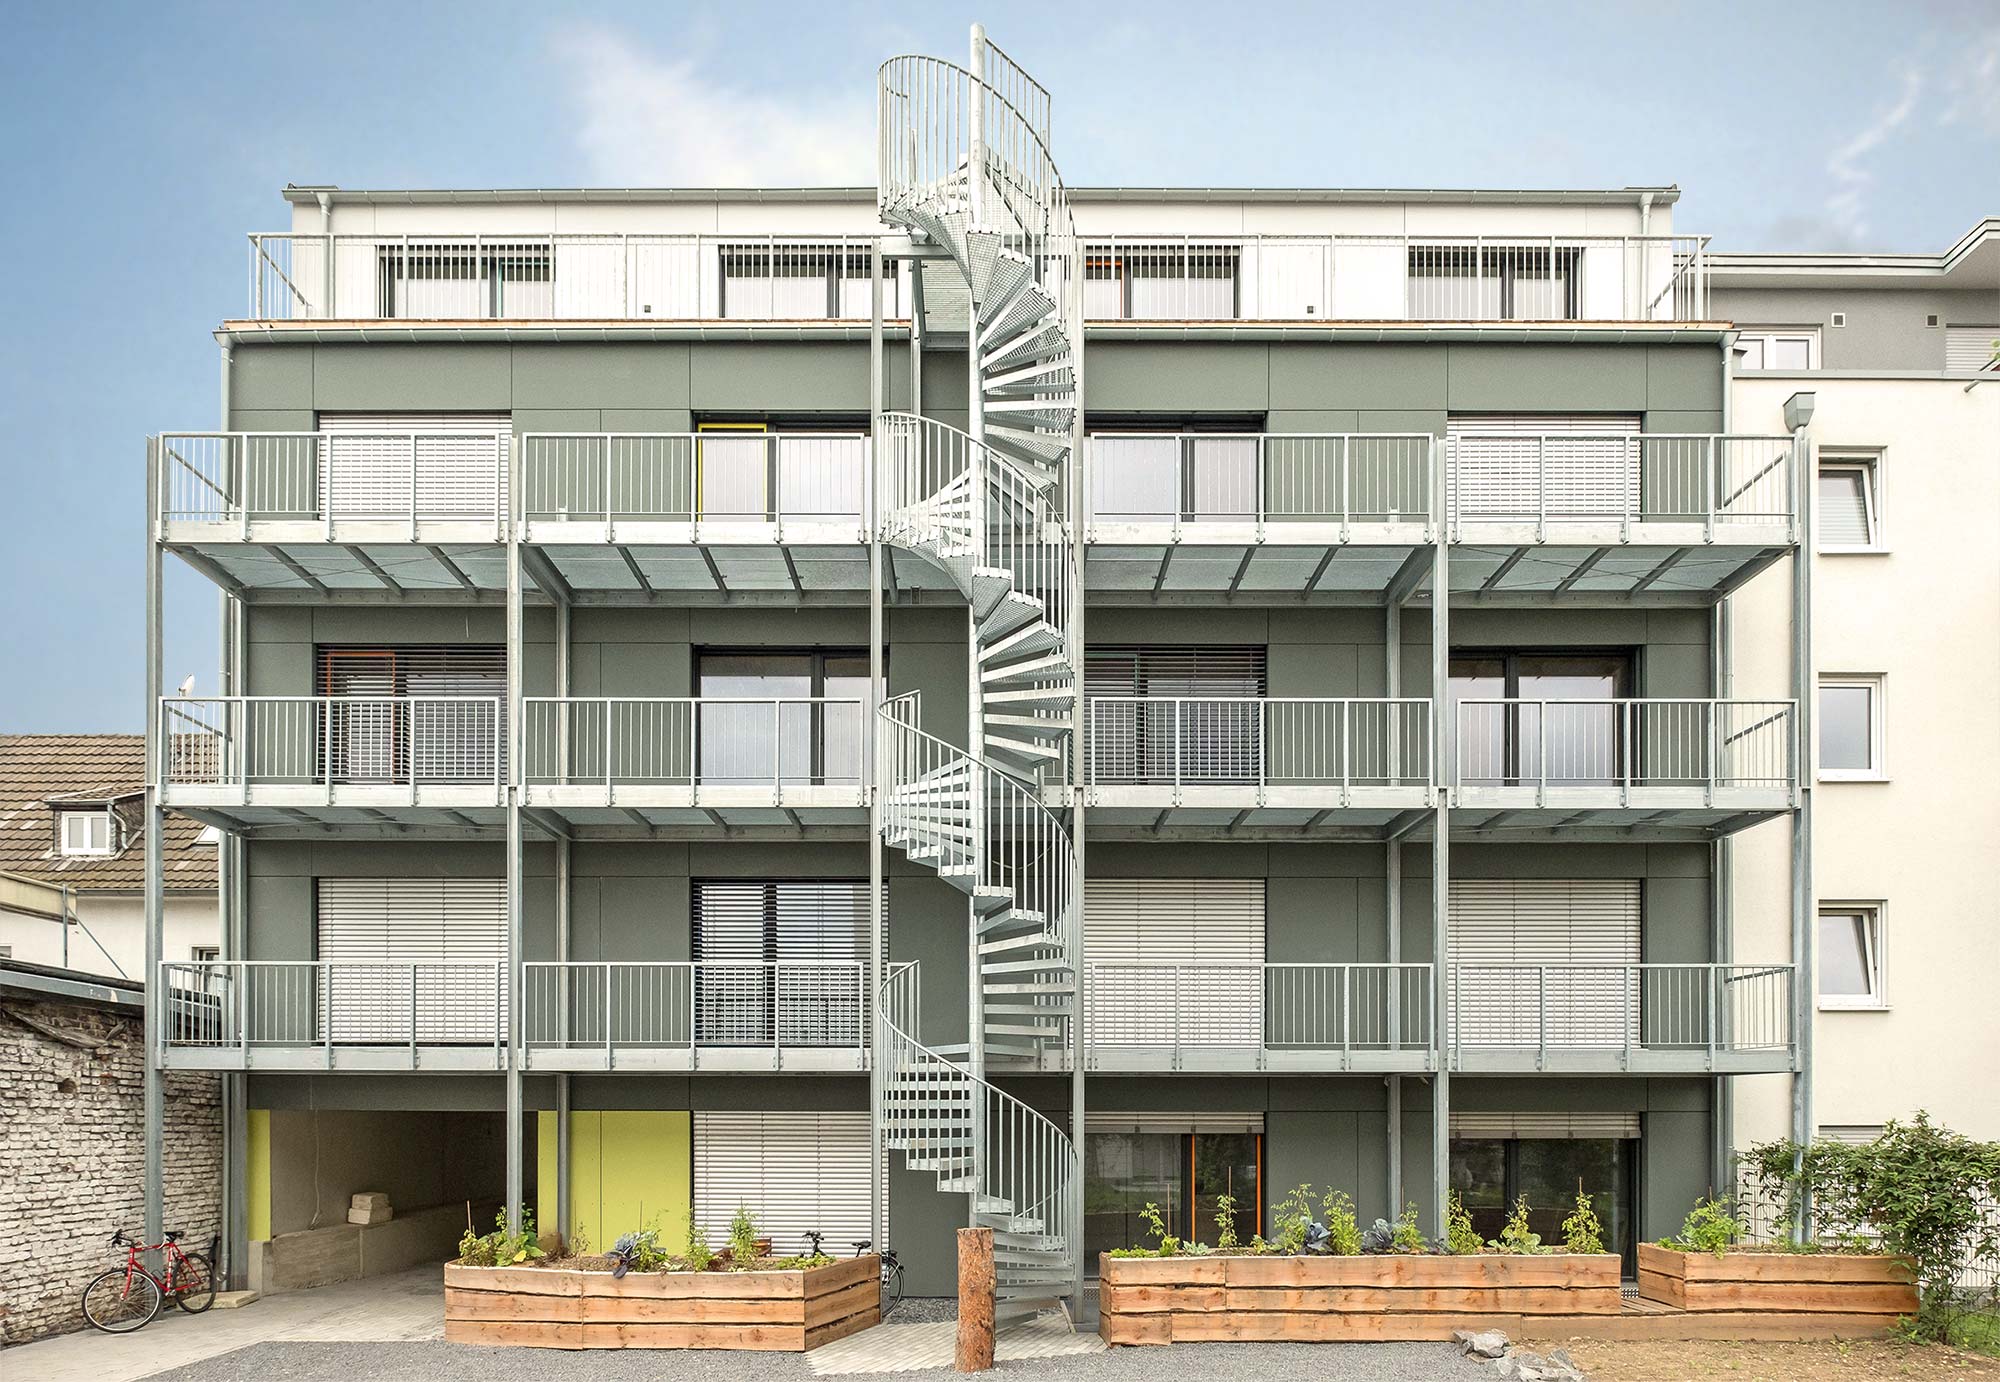 Studentenwohnheim 42, Bonn, Kay Künzel, raum für architektur